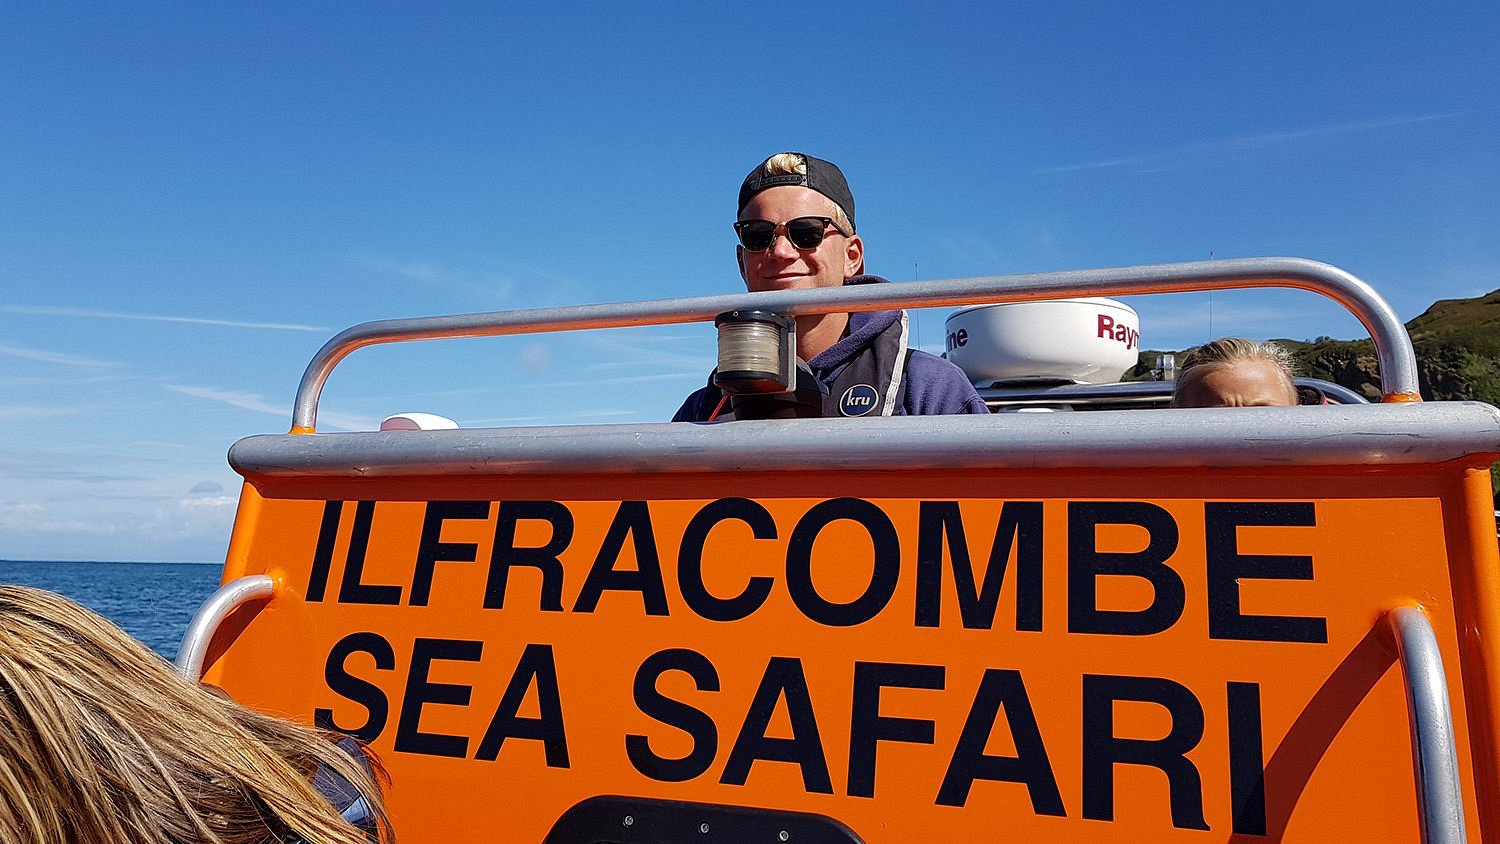 ilfracombe sea safari voucher code